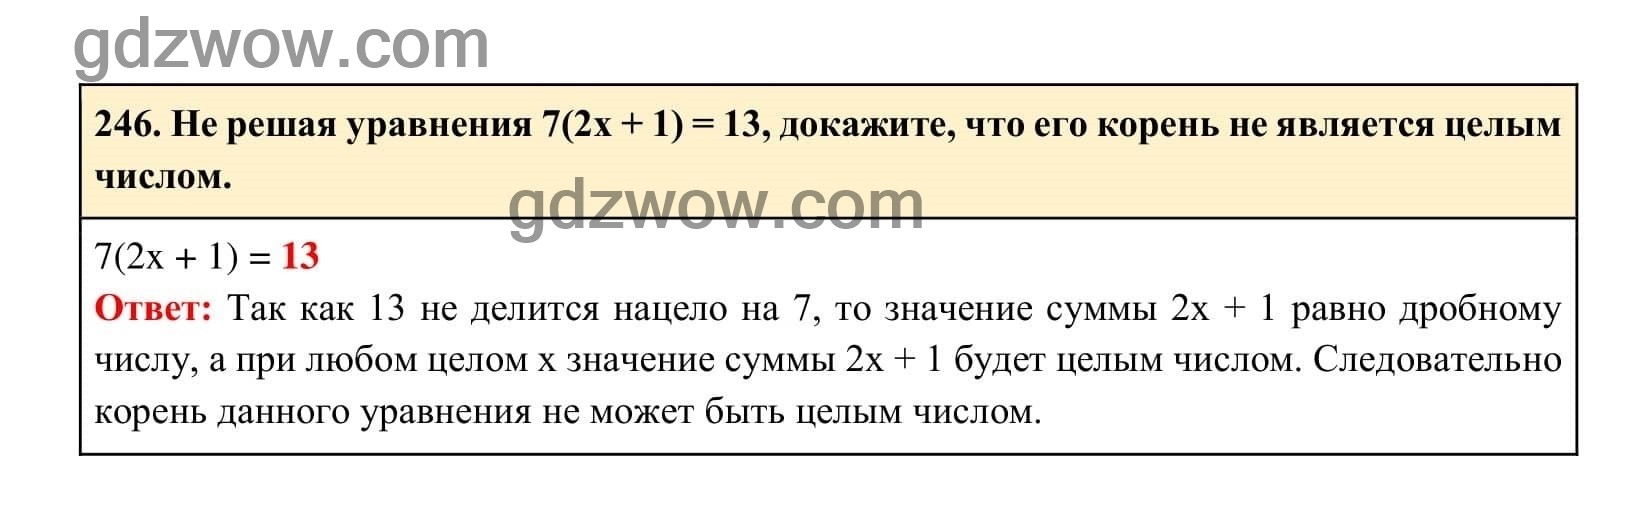 Упражнение 246 - ГДЗ по Алгебре 7 класс Учебник Макарычев (решебник) - GDZwow